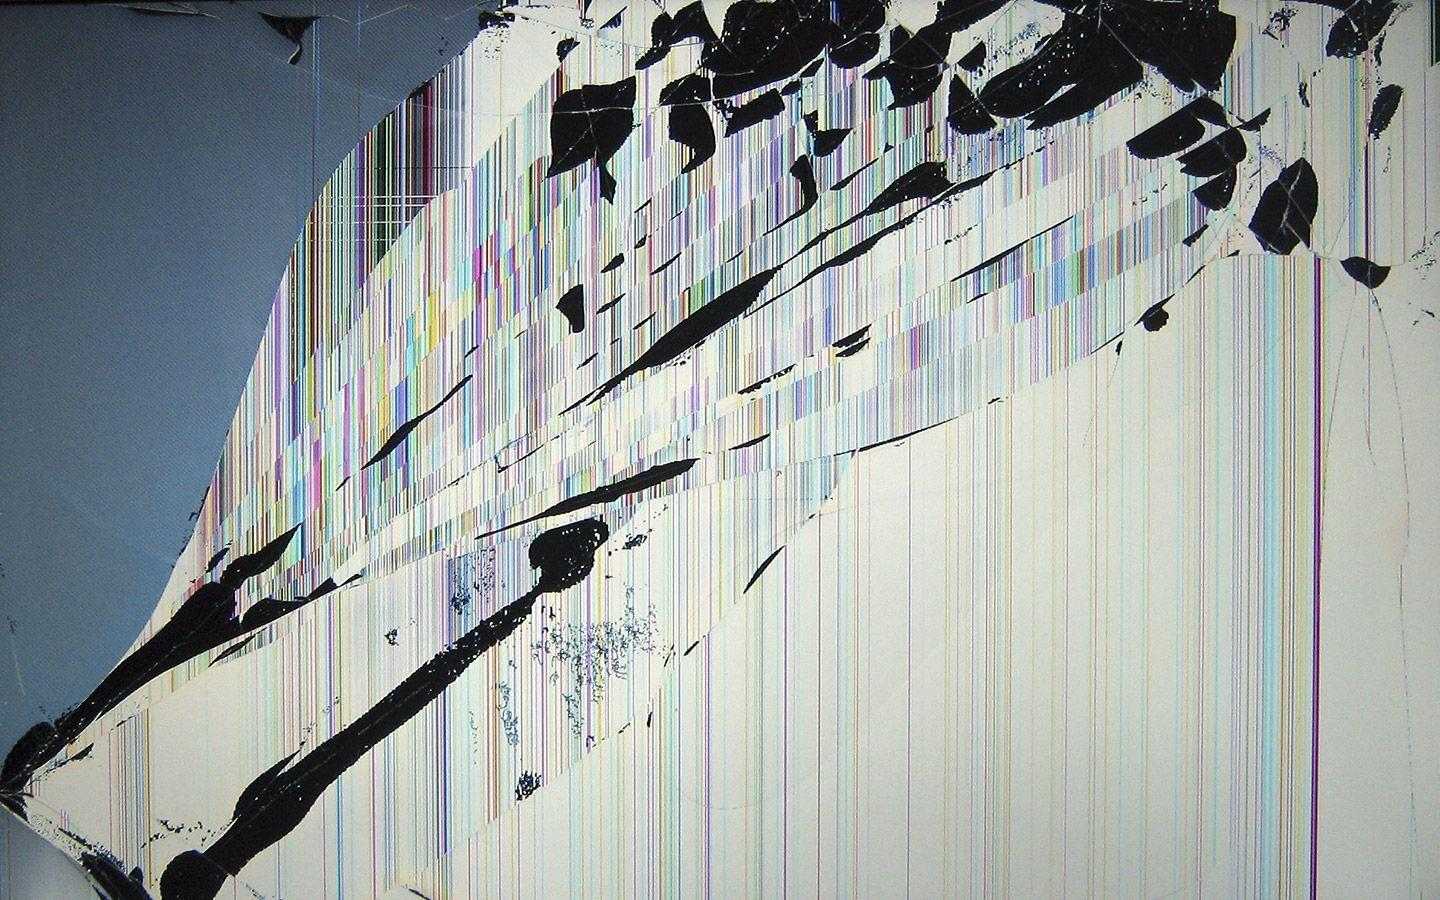 Cracked Screen Wallpaper Wallpaper Trends With Broken Picture